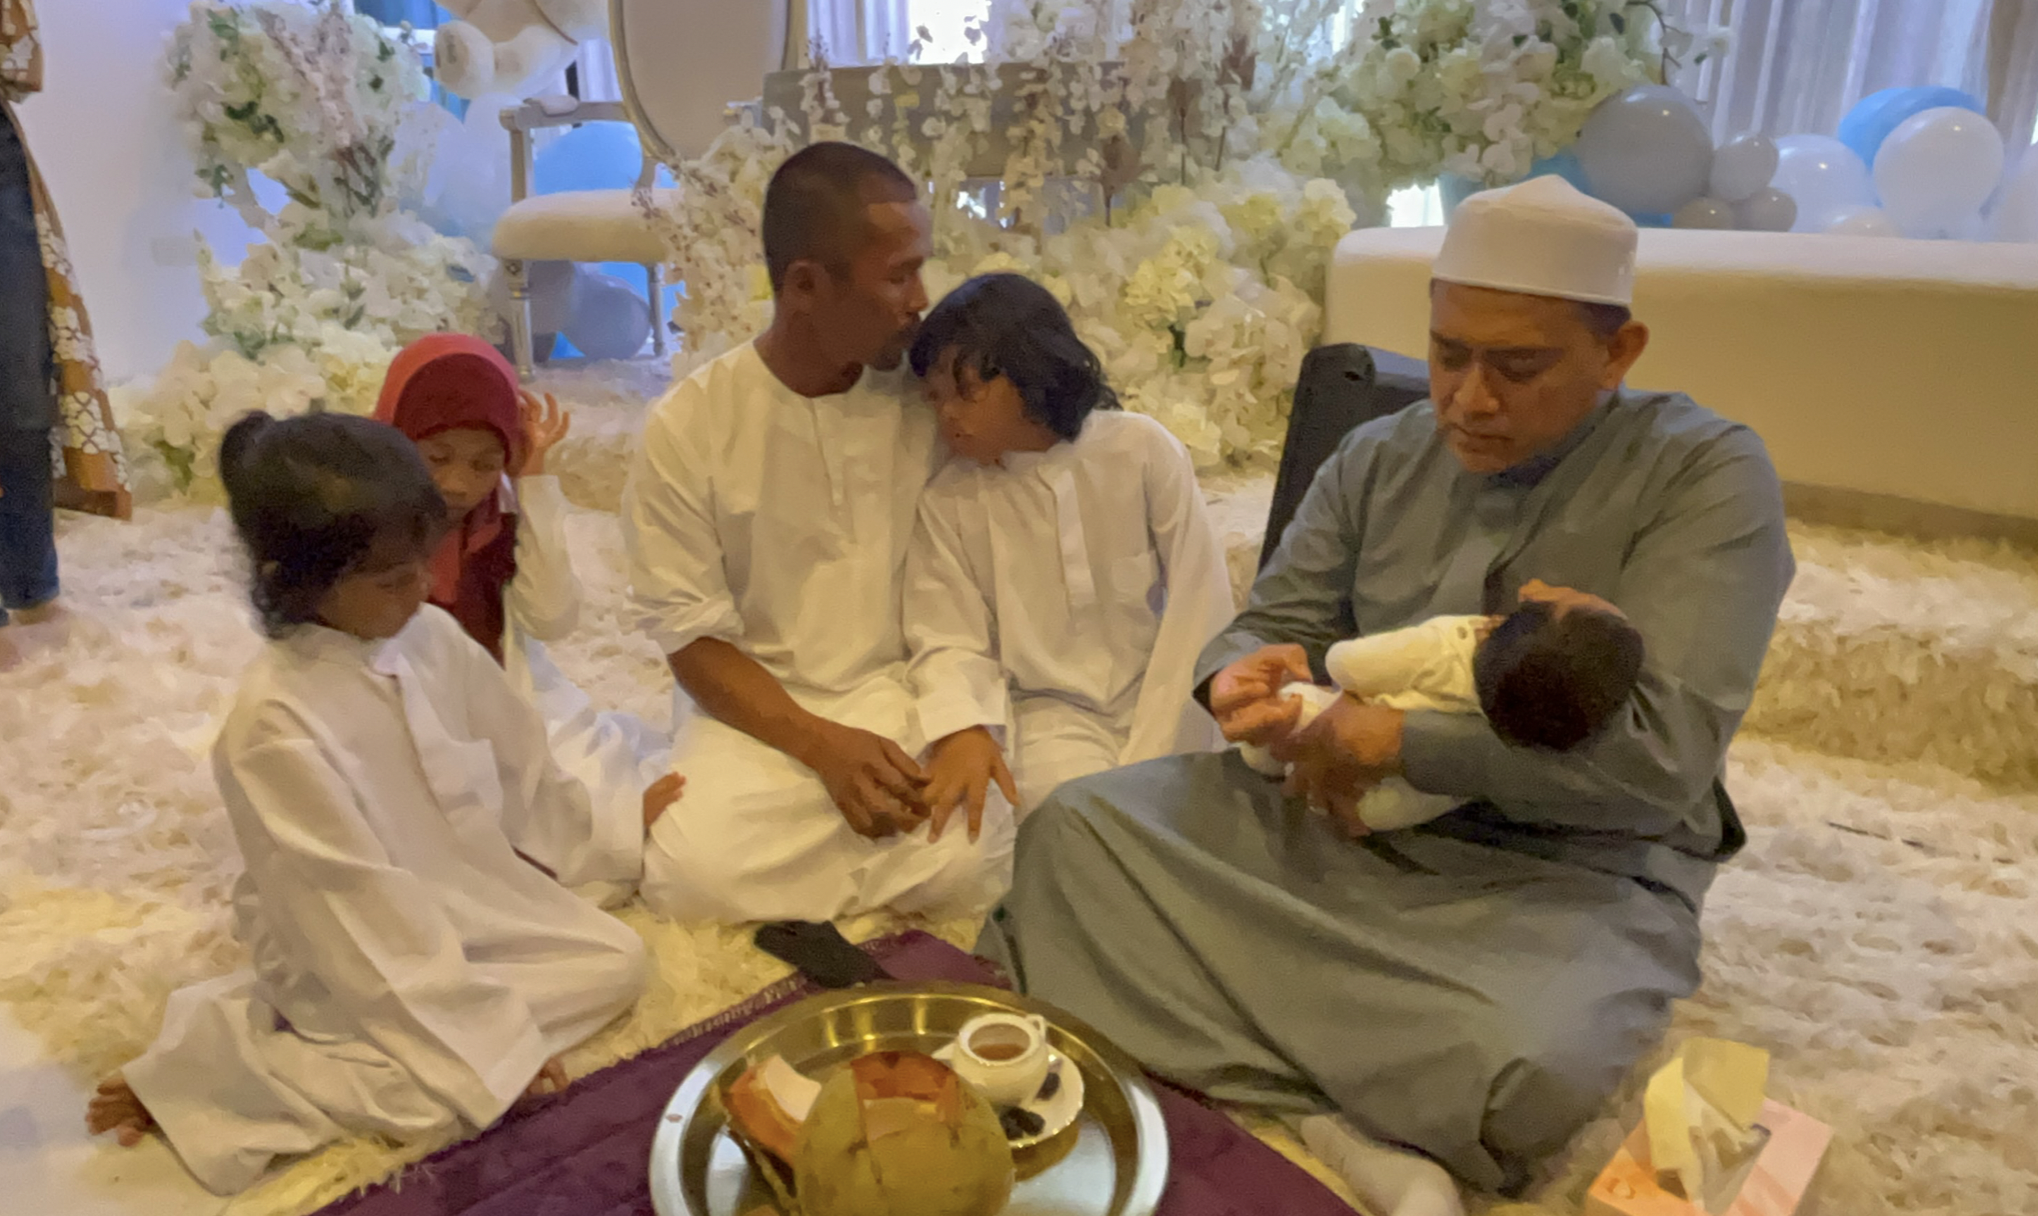 Genap 100 Hari Pemergiaan Arwah Siti Sarah, Shuib Anjur Majlis Tahlil, Cukur Jambul & Aqiqah – ‘Comelnya Ayash Affan’